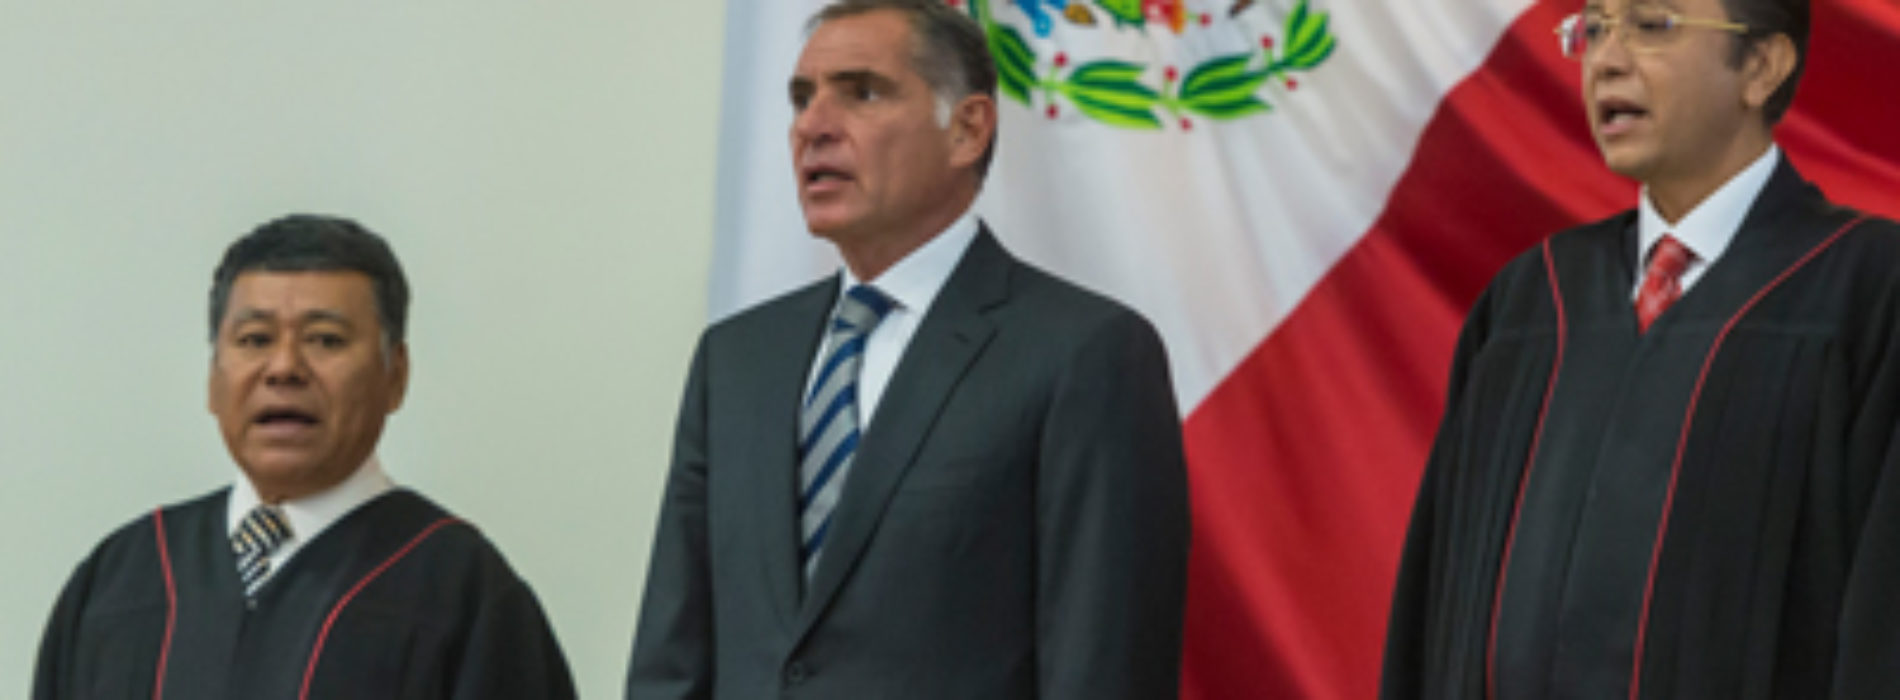 Reafirma Gabino Cué vínculos de cooperación y respeto a la autonomía del Poder Judicial del Estado